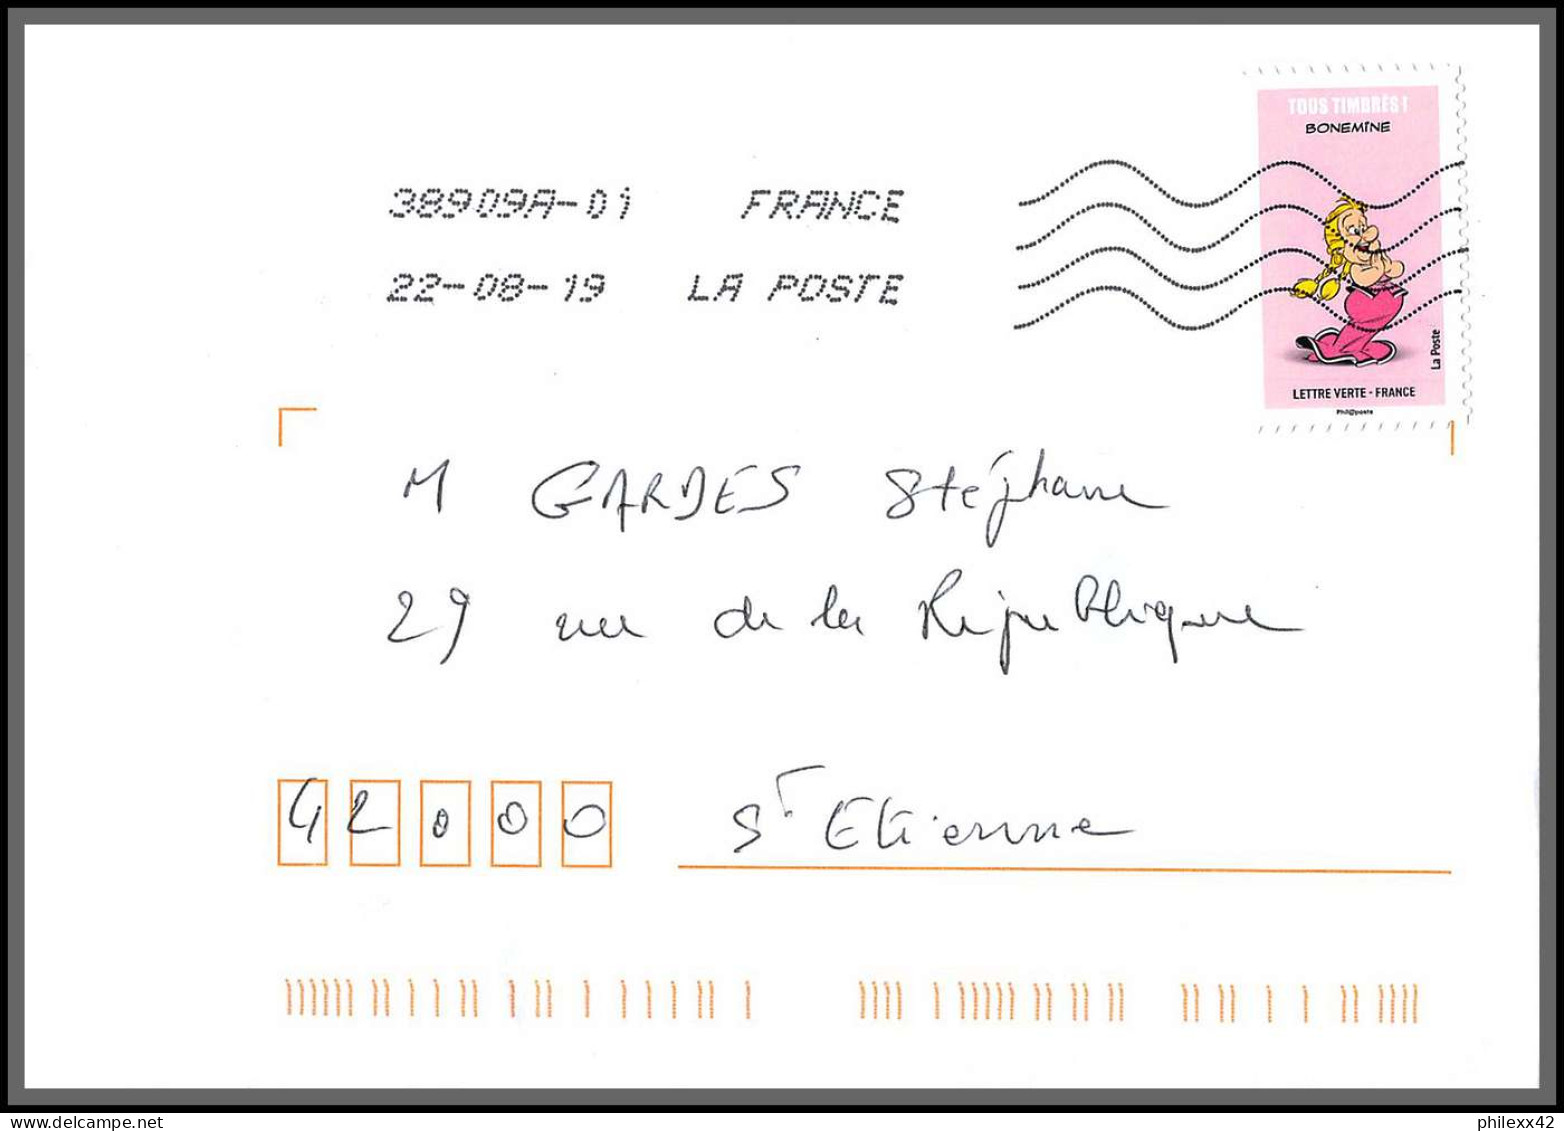 95731 - lot de 15 courriers lettres enveloppes de l'année 2019 divers affranchissements en EUROS